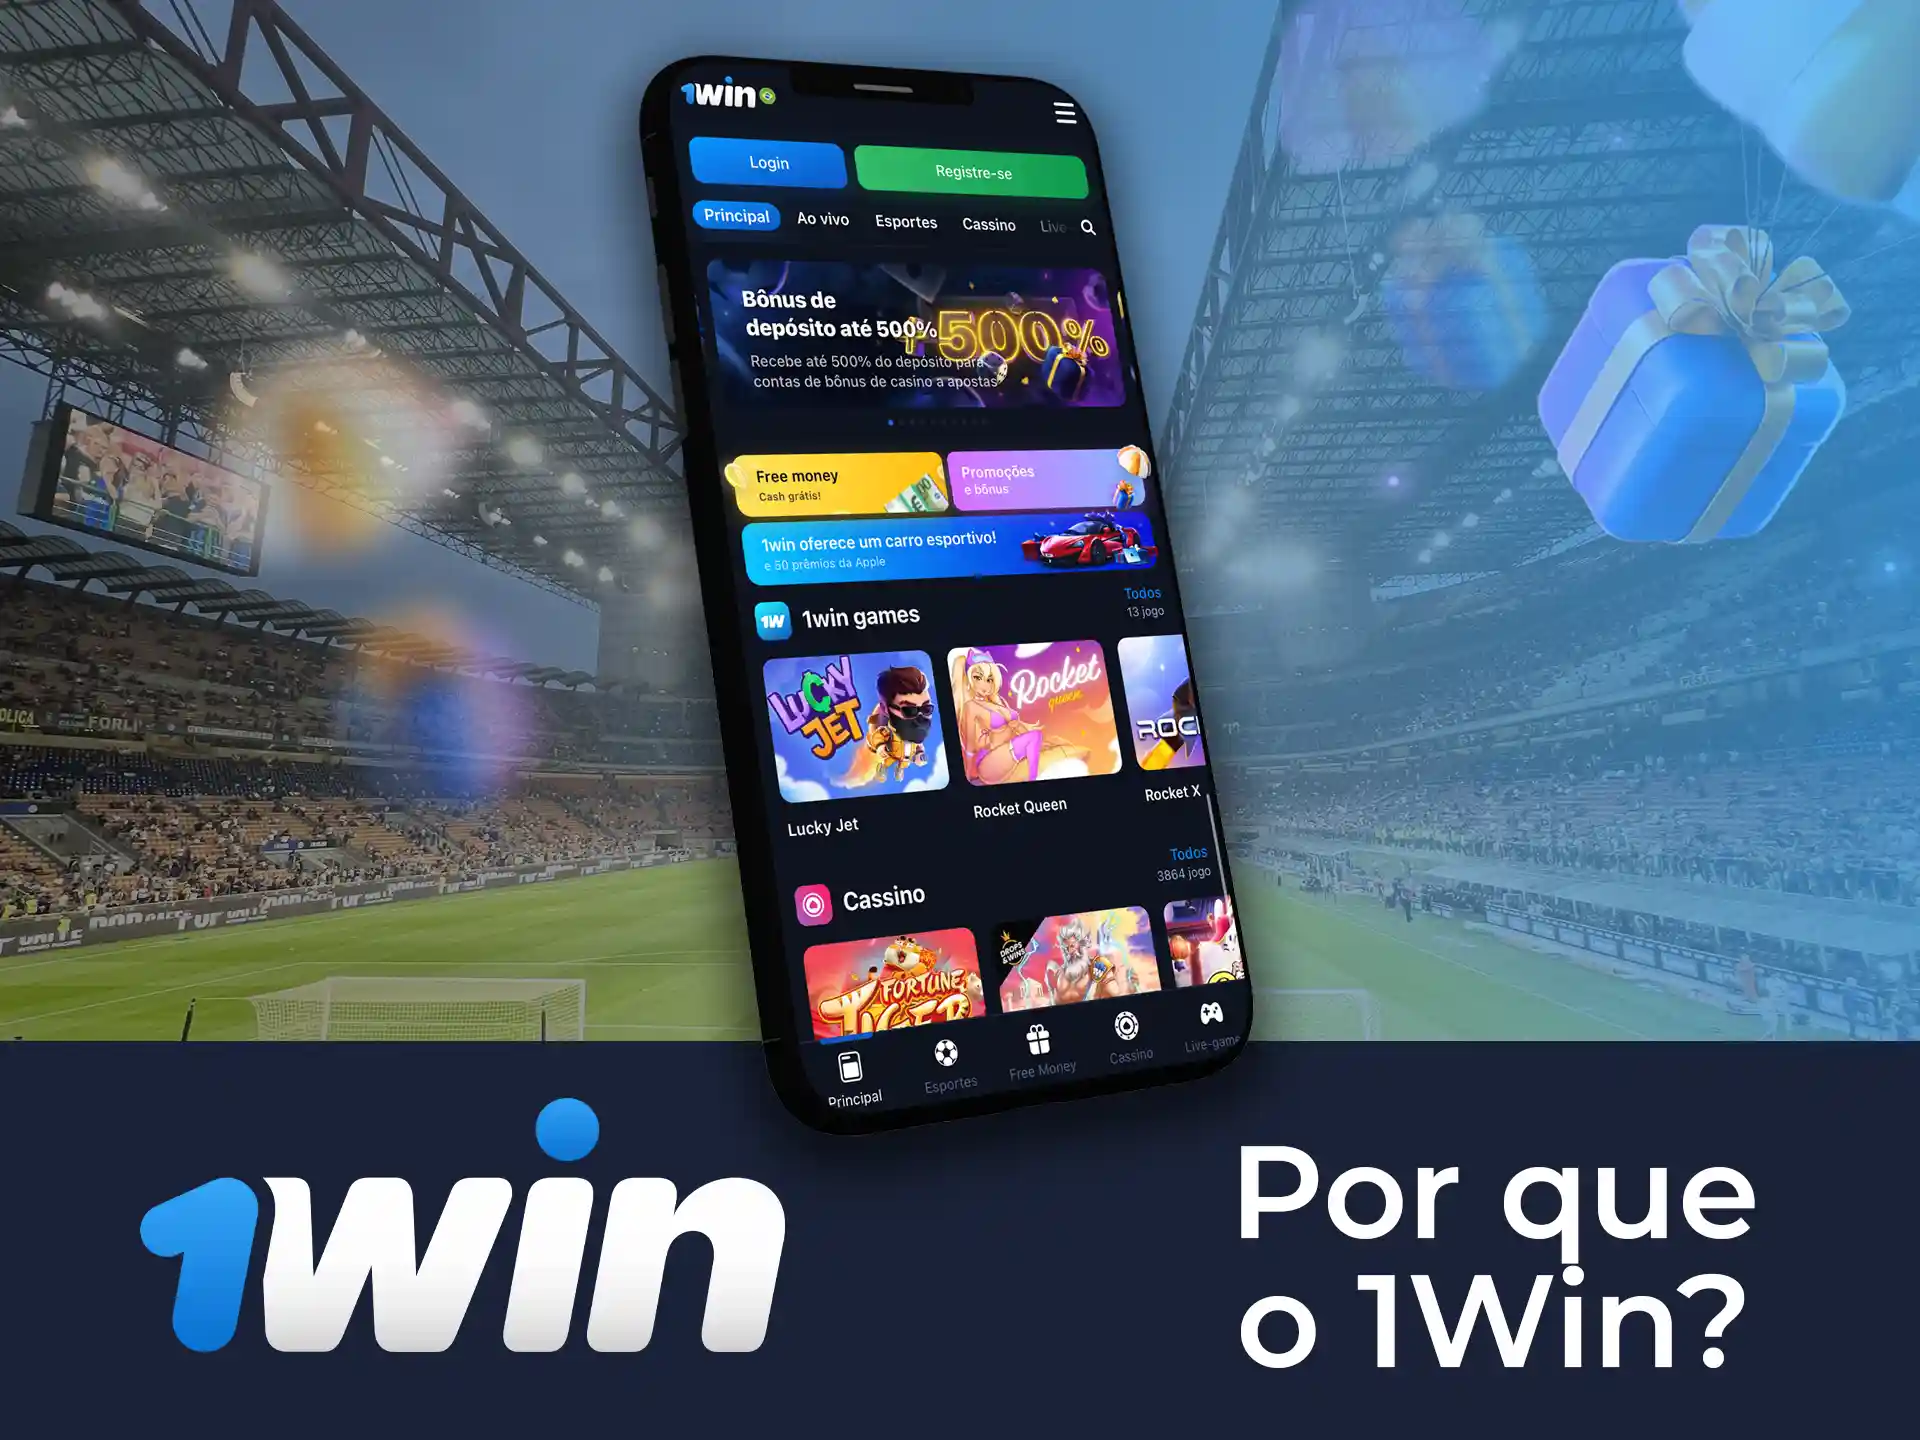 O 1Win oferece uma ampla gama de opções de apostas e um desempenho rápido do aplicativo.